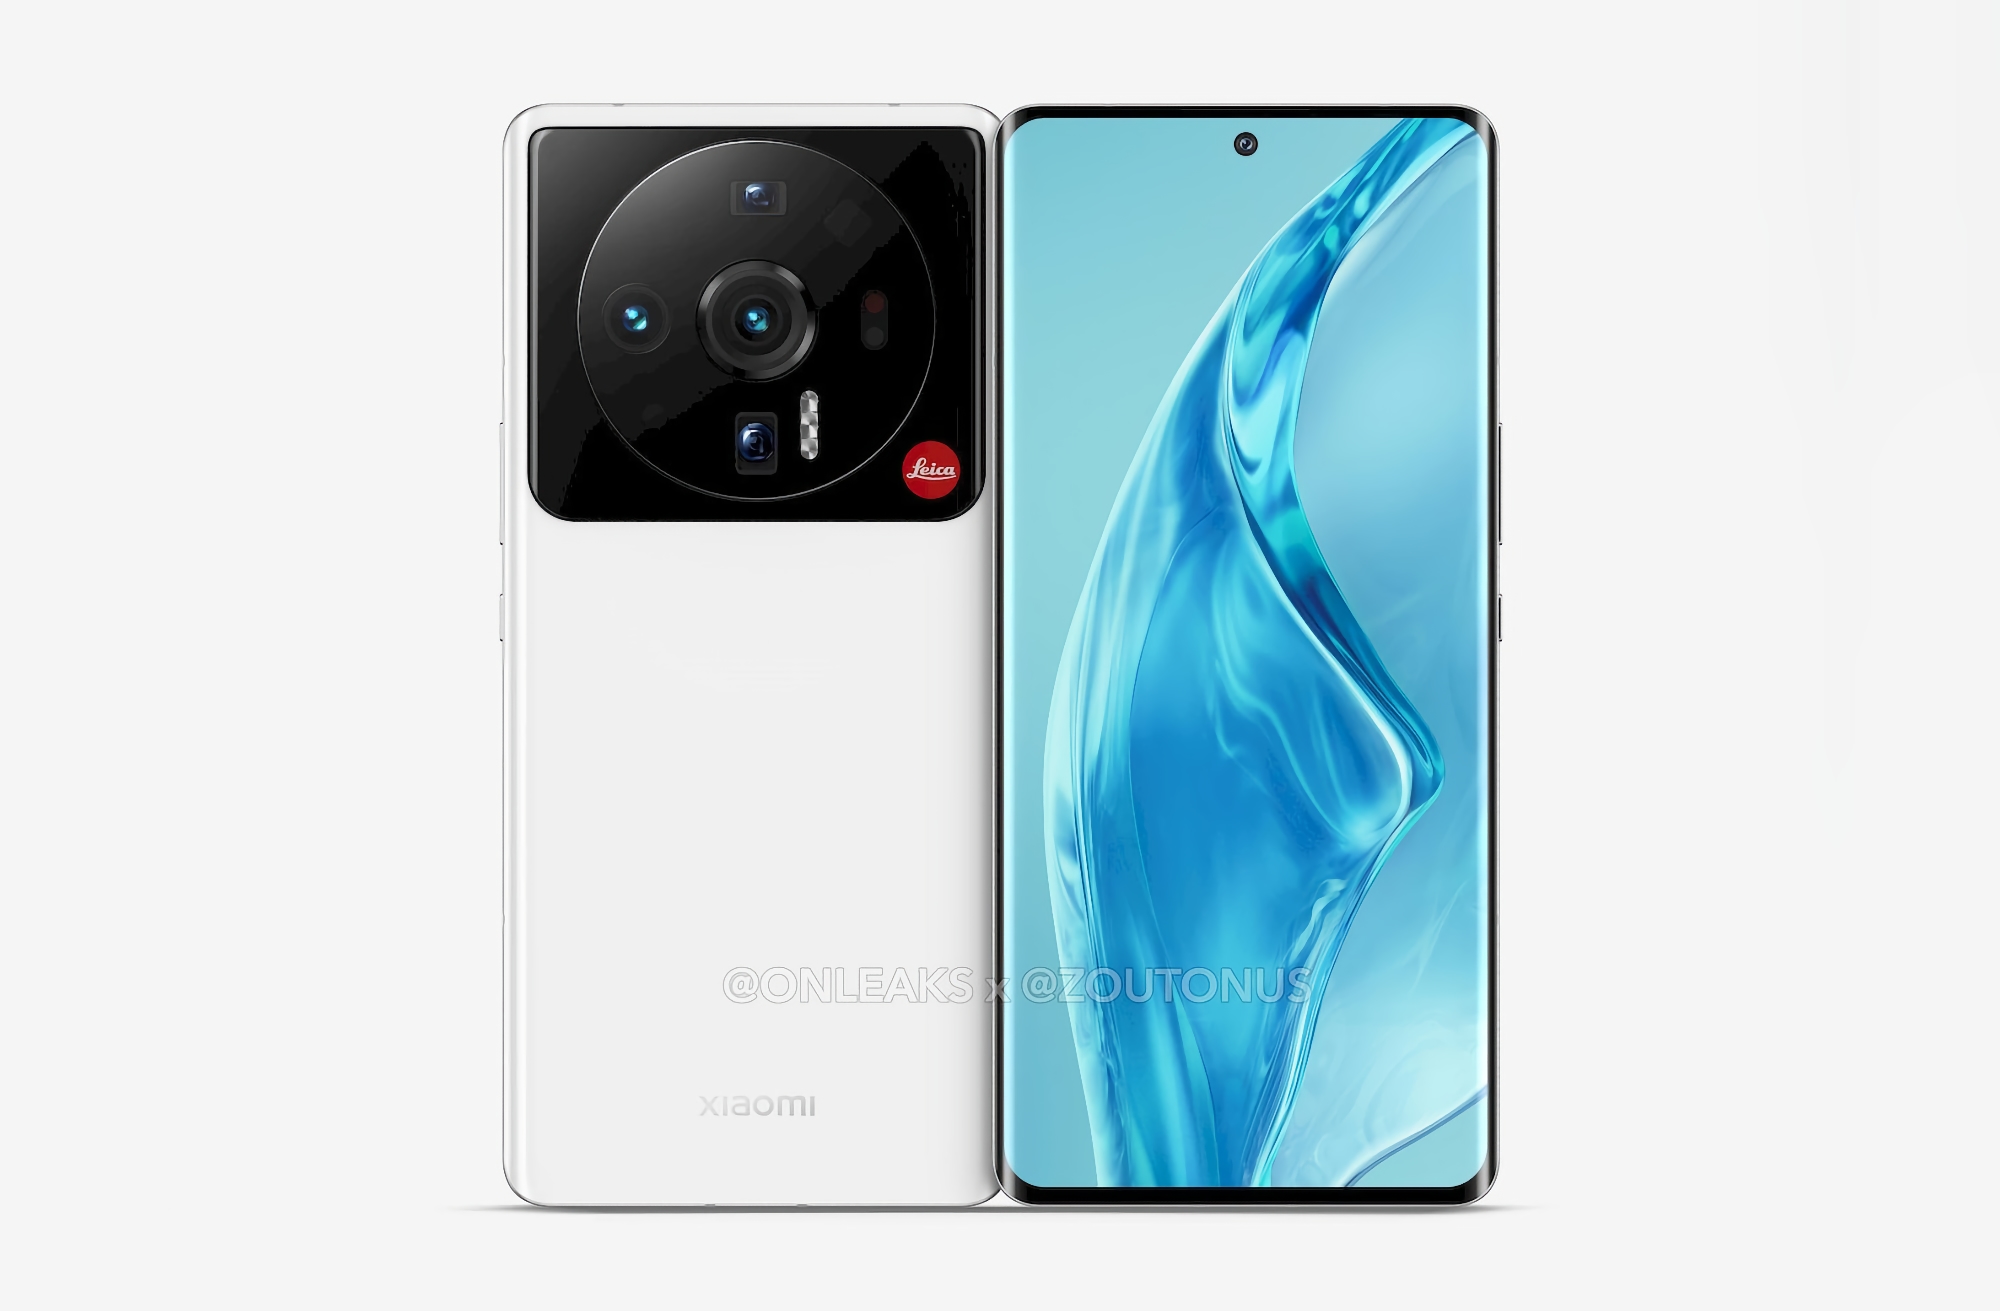 Oficial: la serie Xiaomi 12S de teléfonos inteligentes con cámara Leica y chip Snapdragon 8+ Gen 1 se presentará el 4 de julio